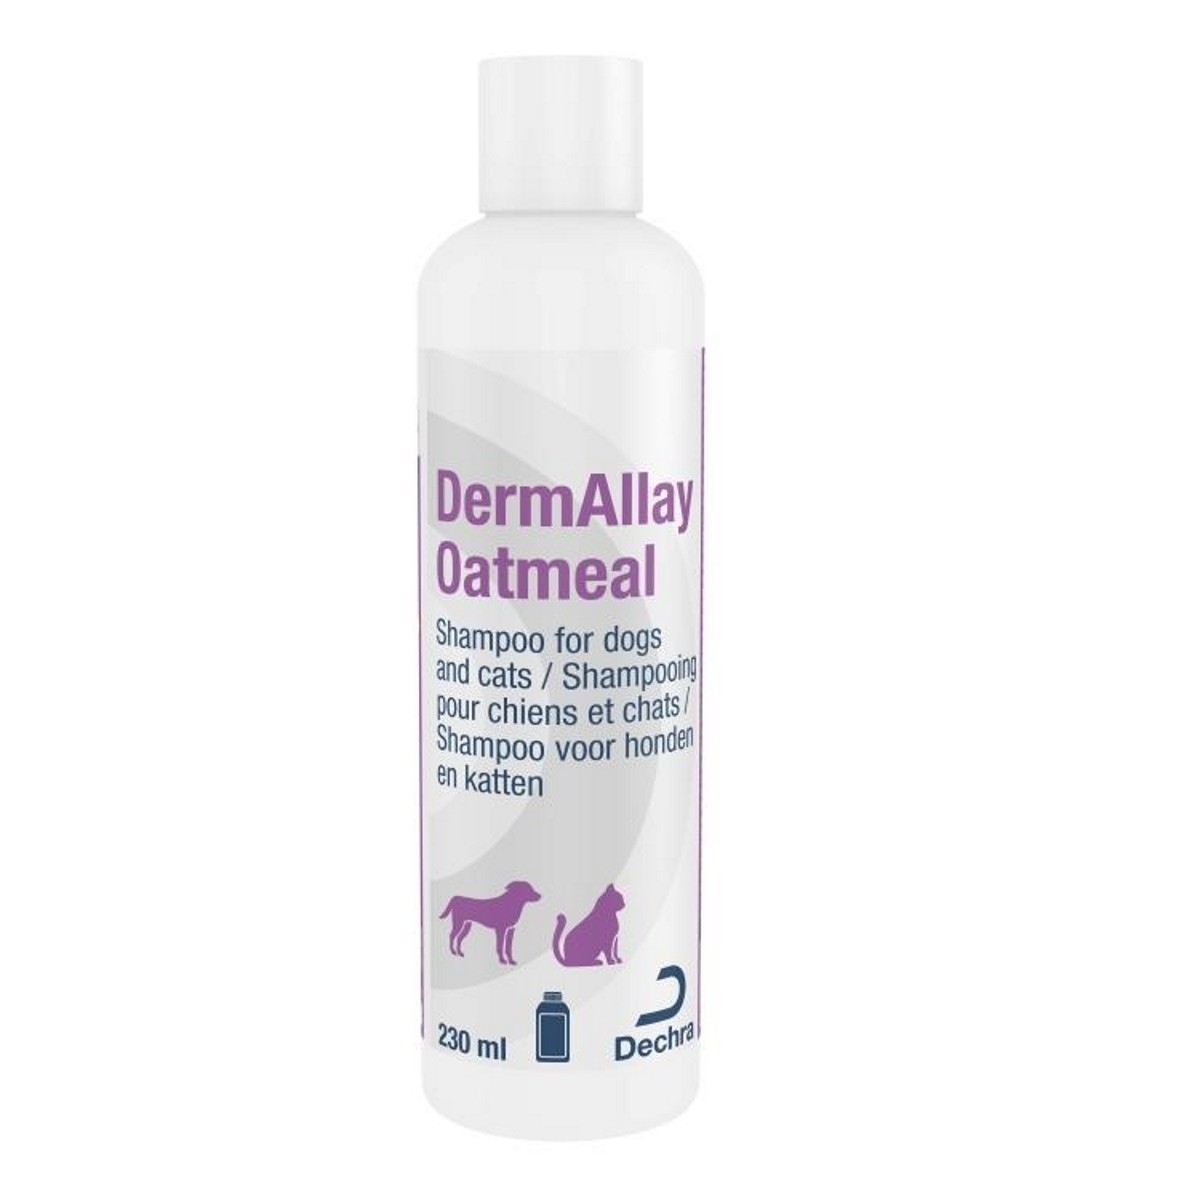 Dermallay Oatmeal Shampoo, 230 ml petmart